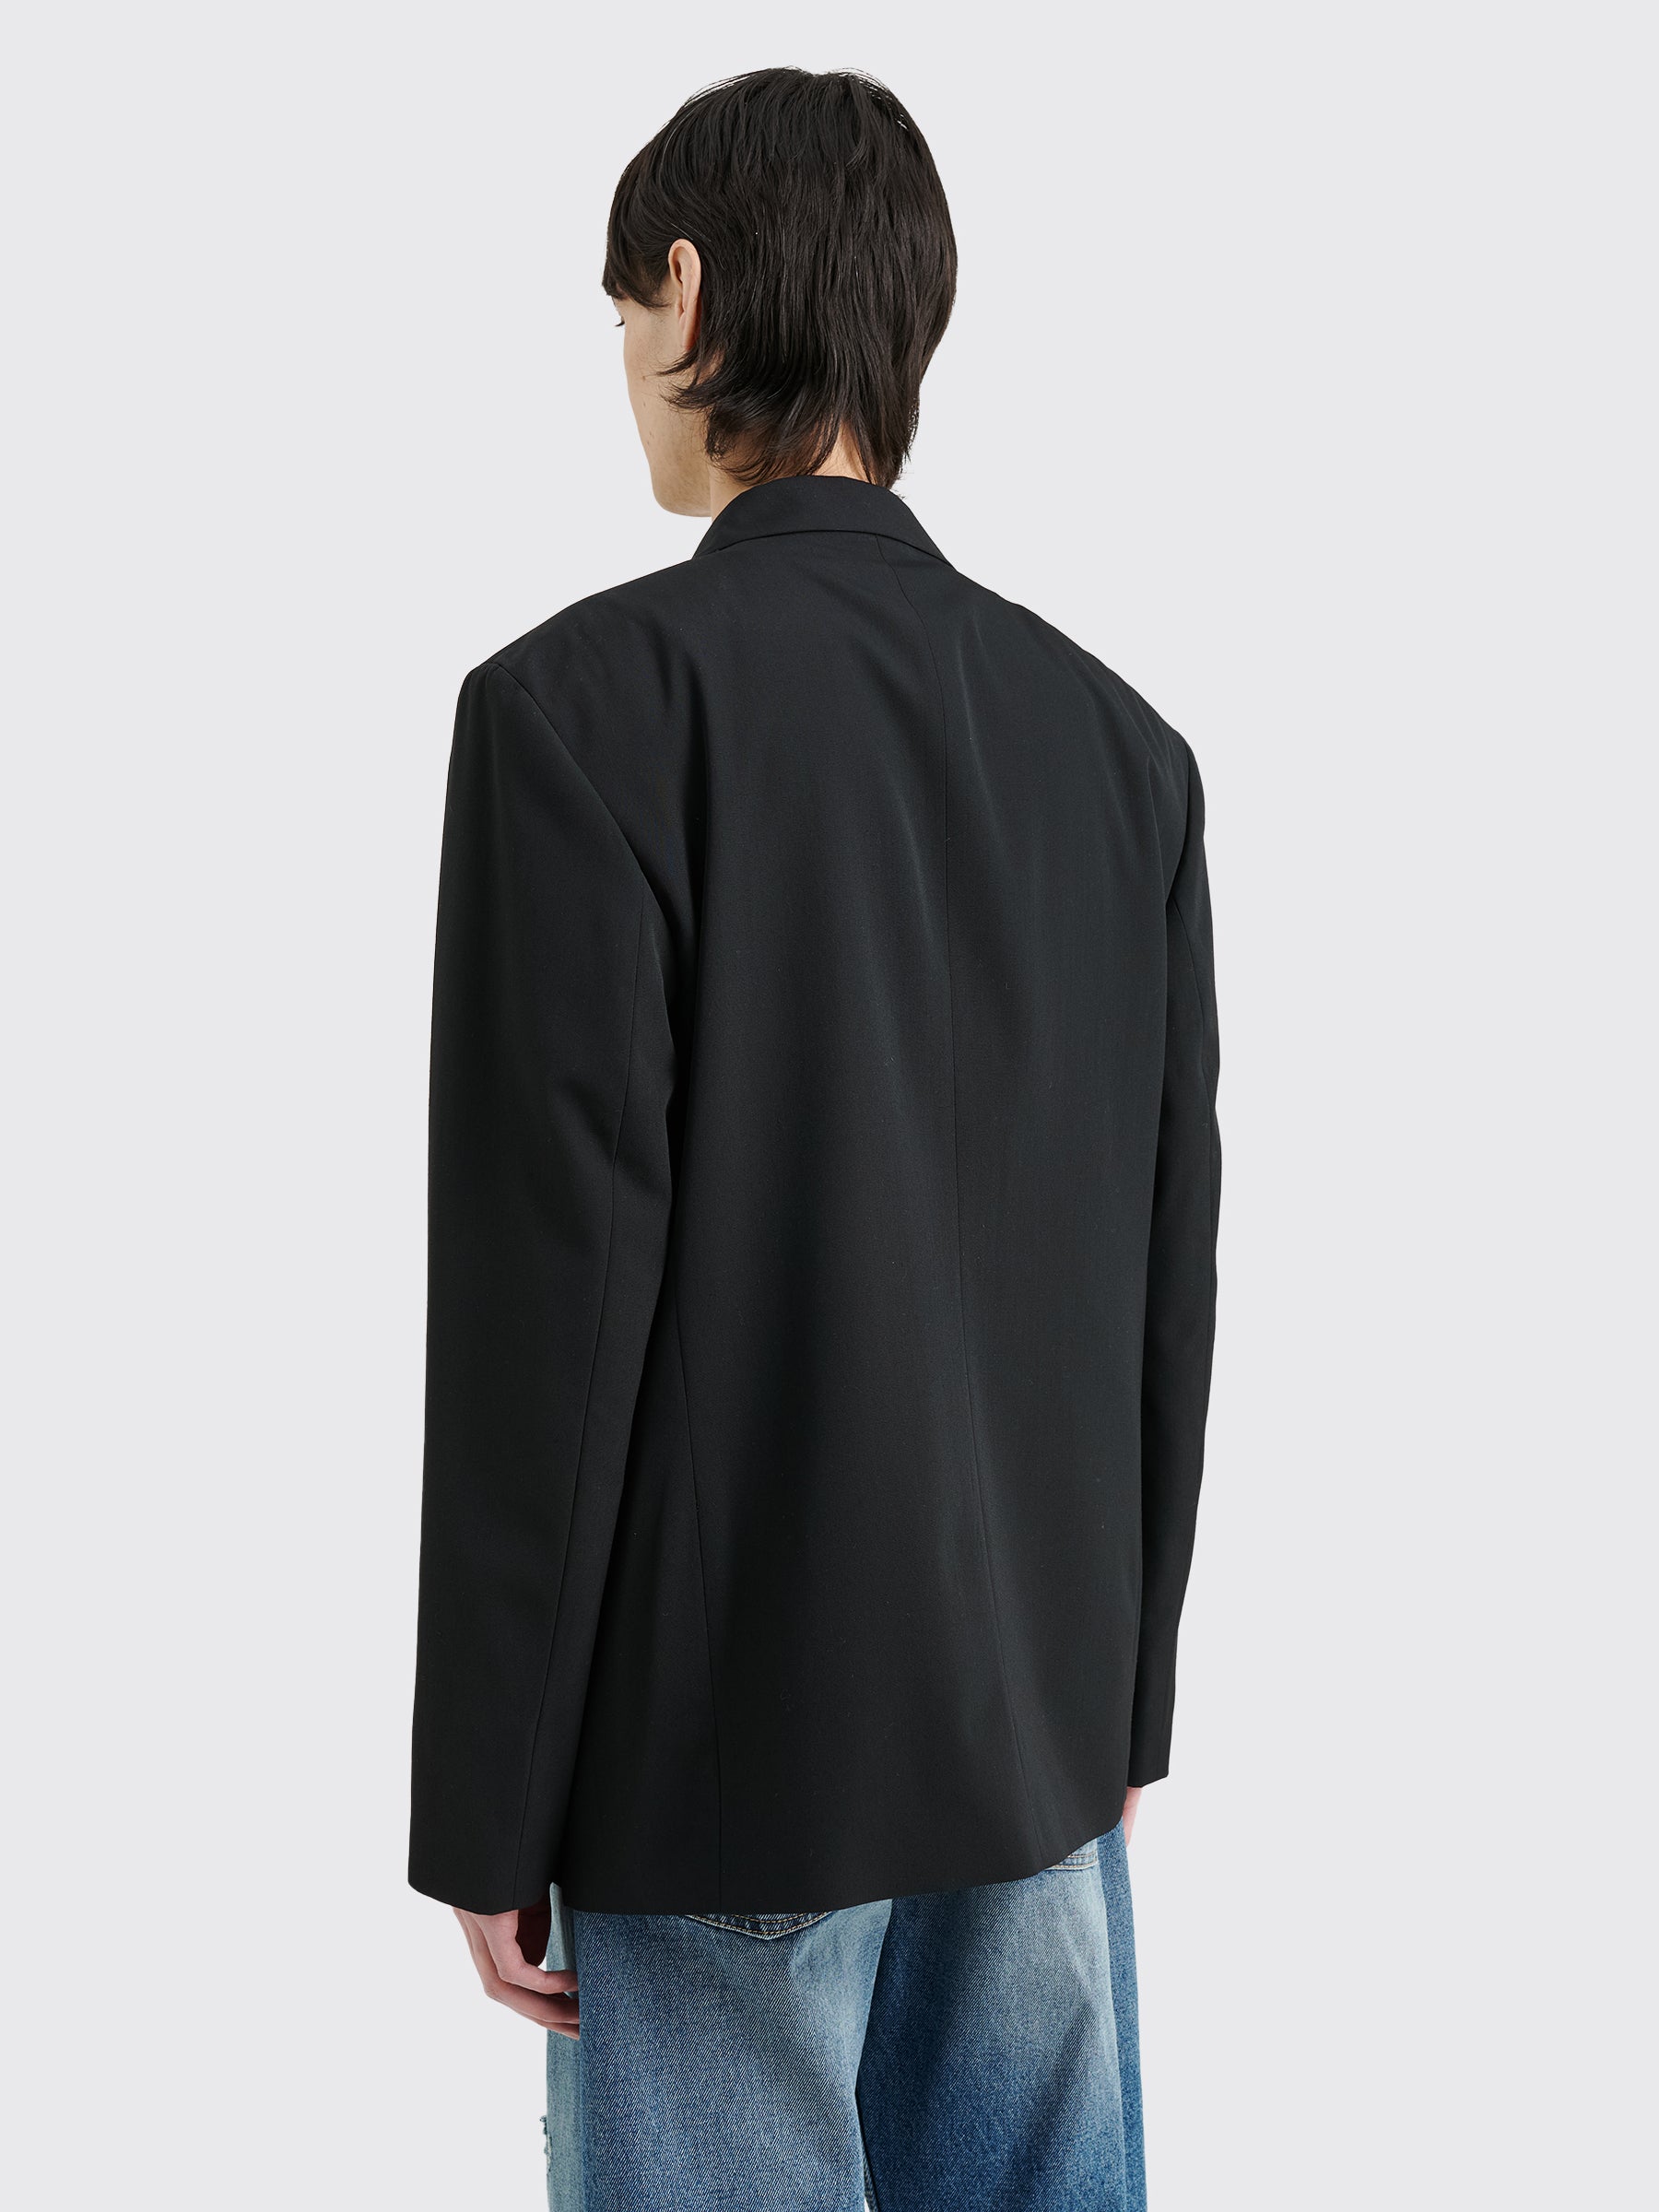 Acne Studios Suit Jacket Black